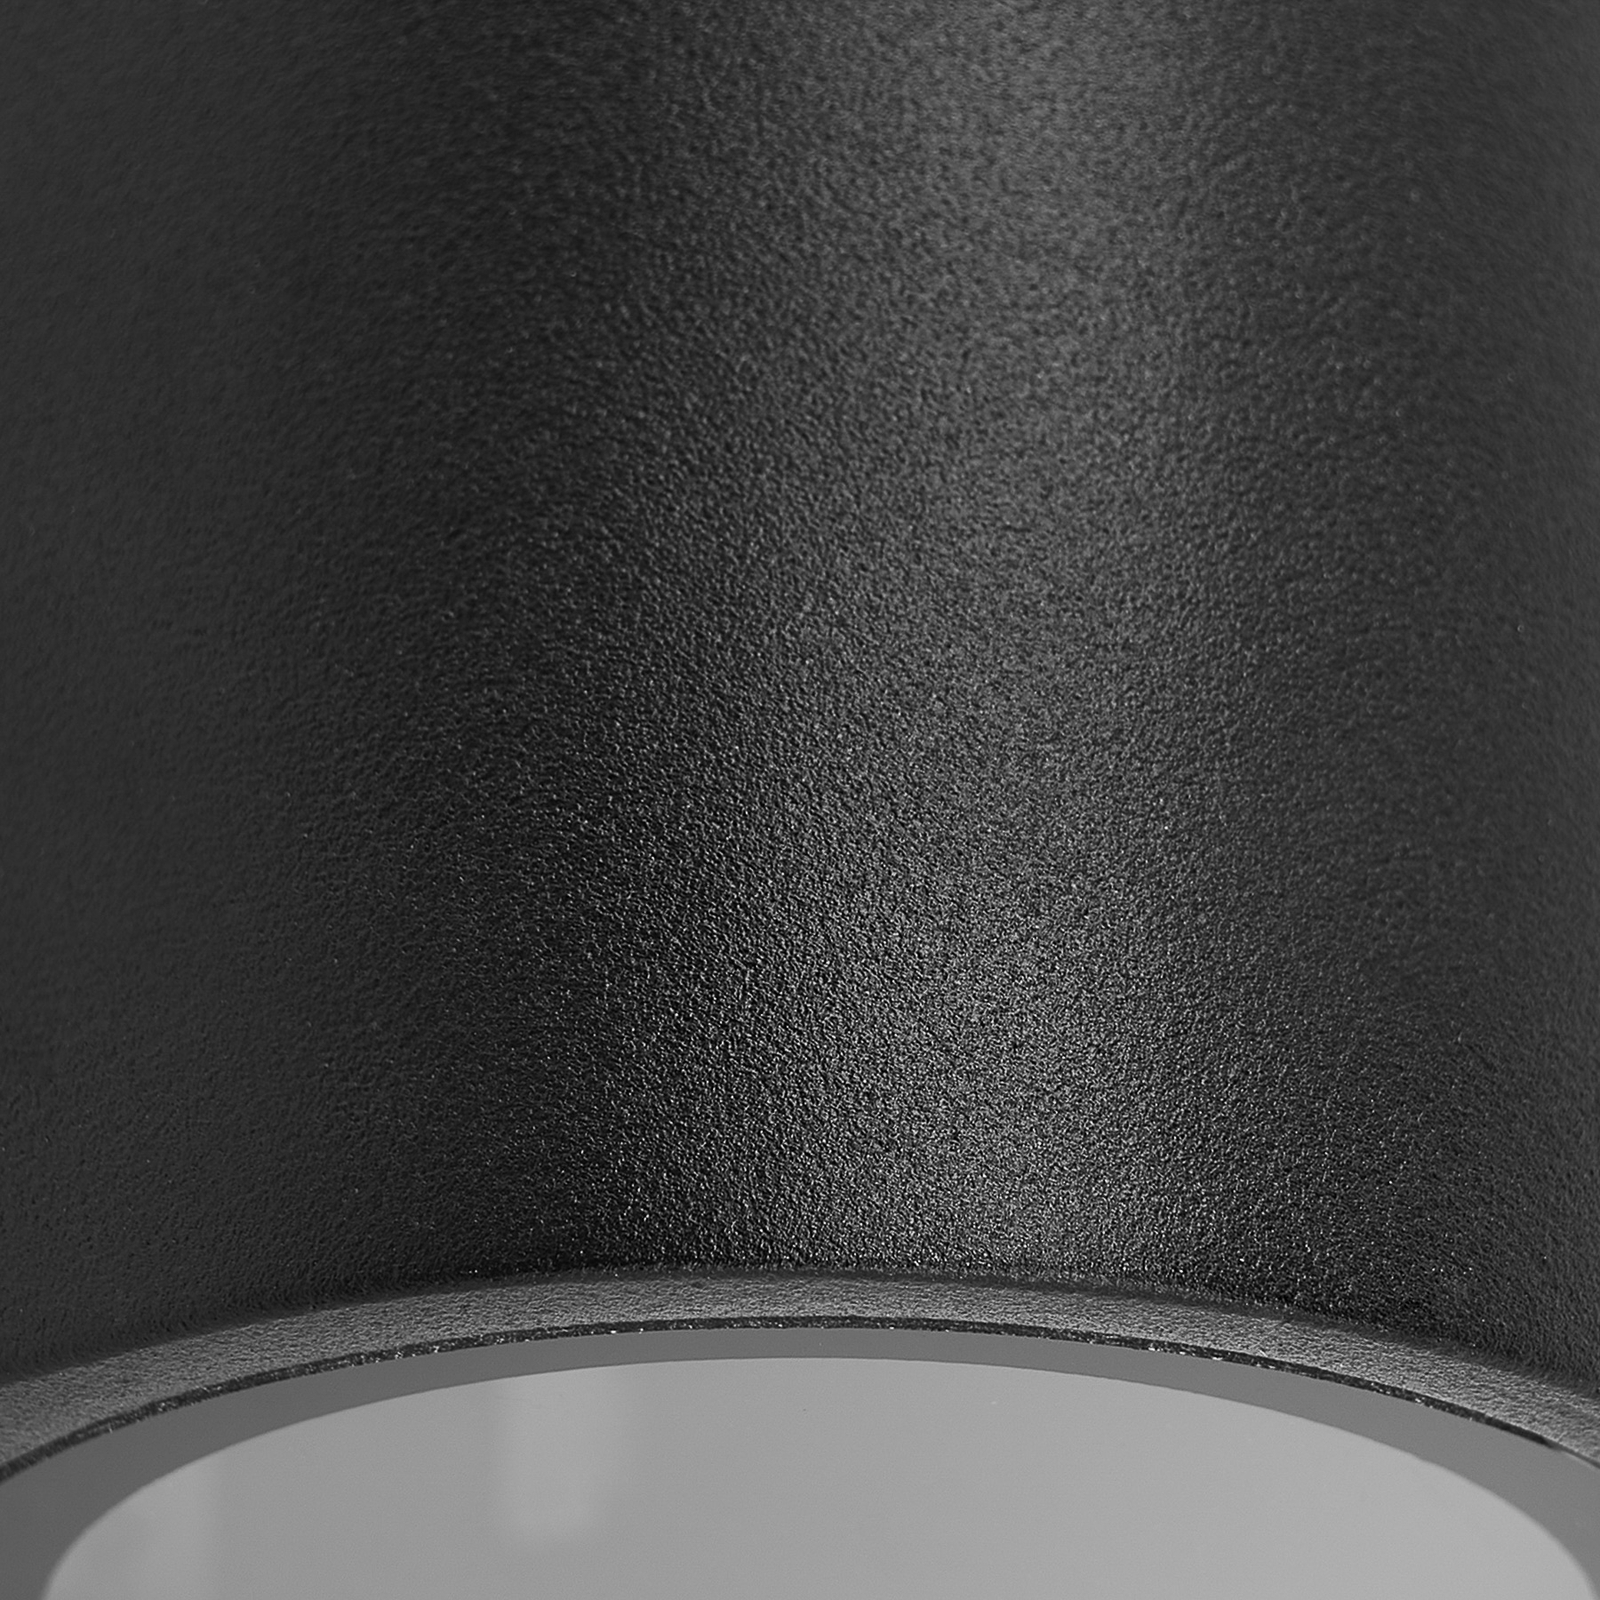 Venkovní nástěnné svítidlo Prios Tetje, černé, kulaté, 10 cm, sada 4 ks